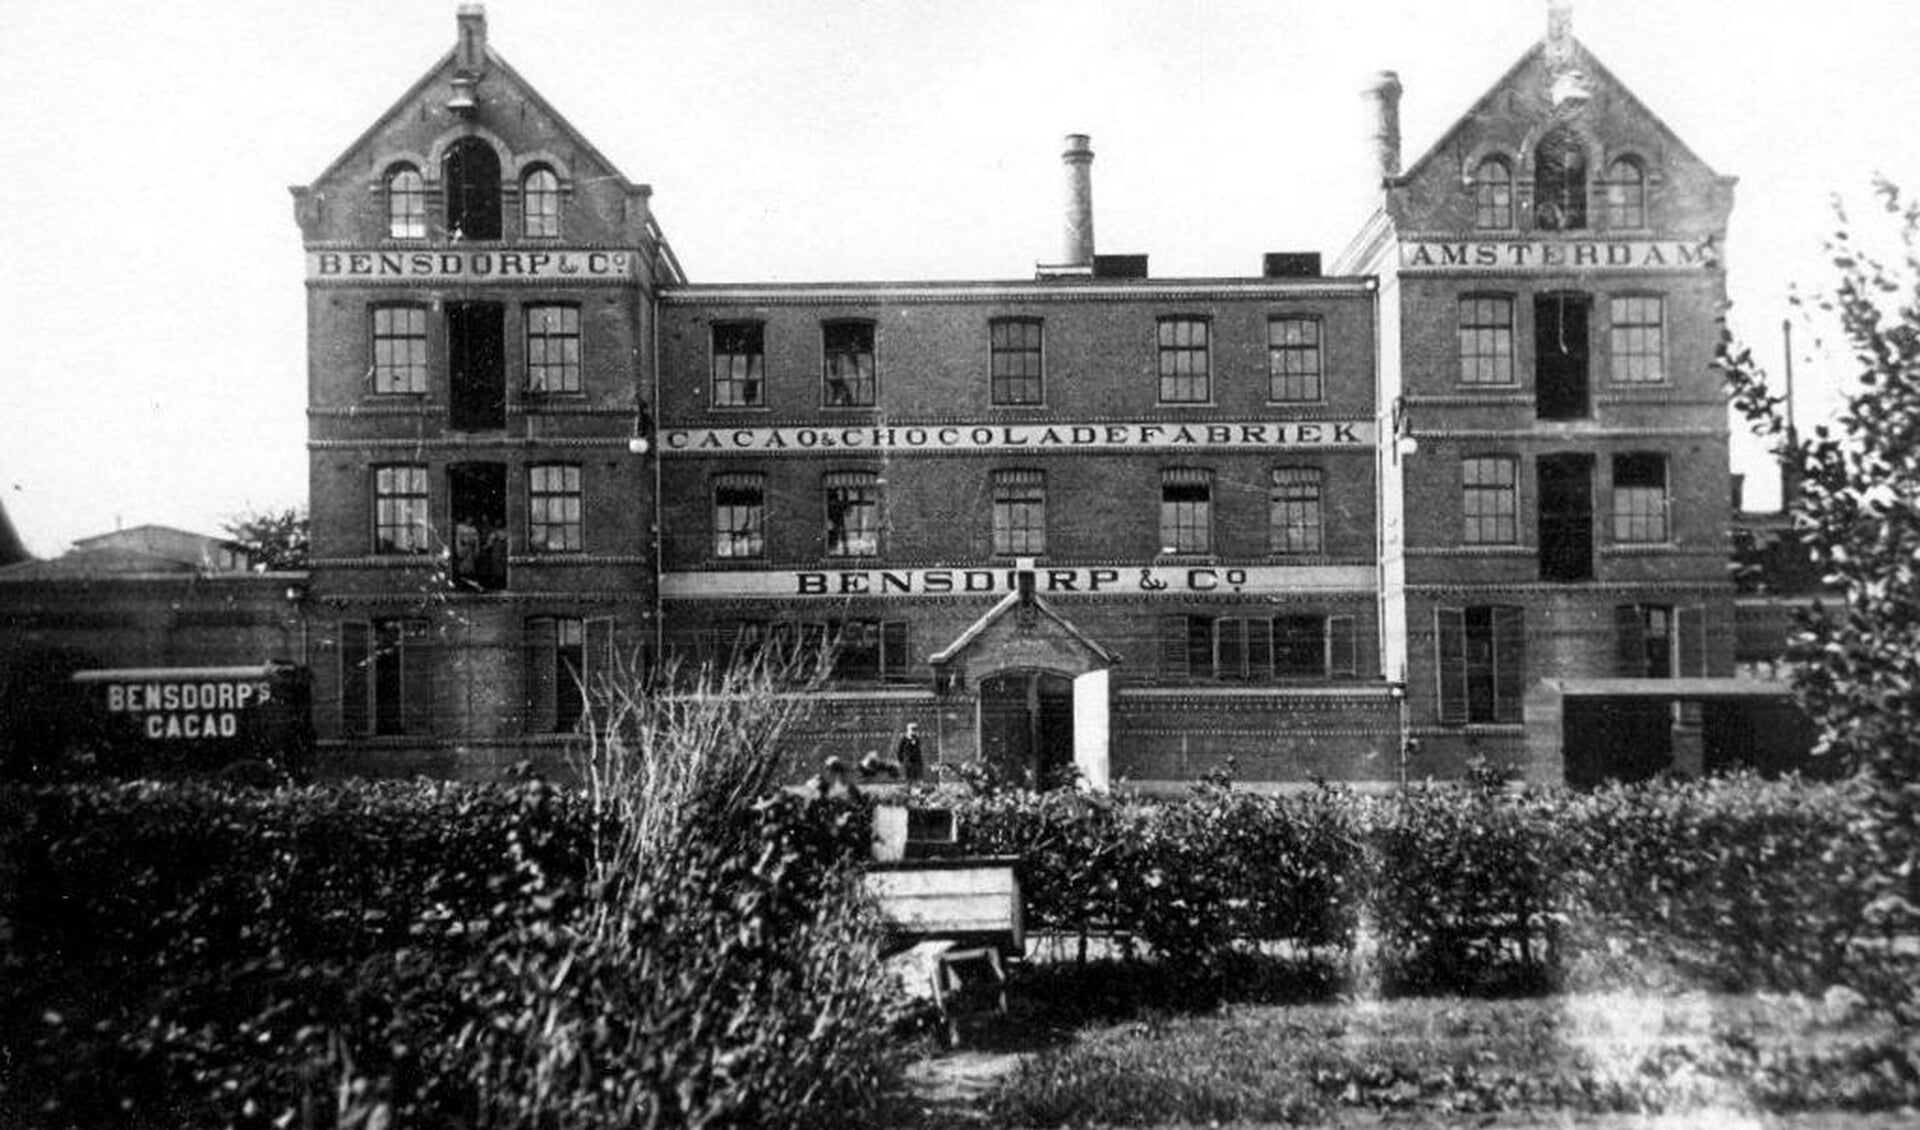 De Bensdorpfabriek in Bussum aan het eind van de 19e eeuw.